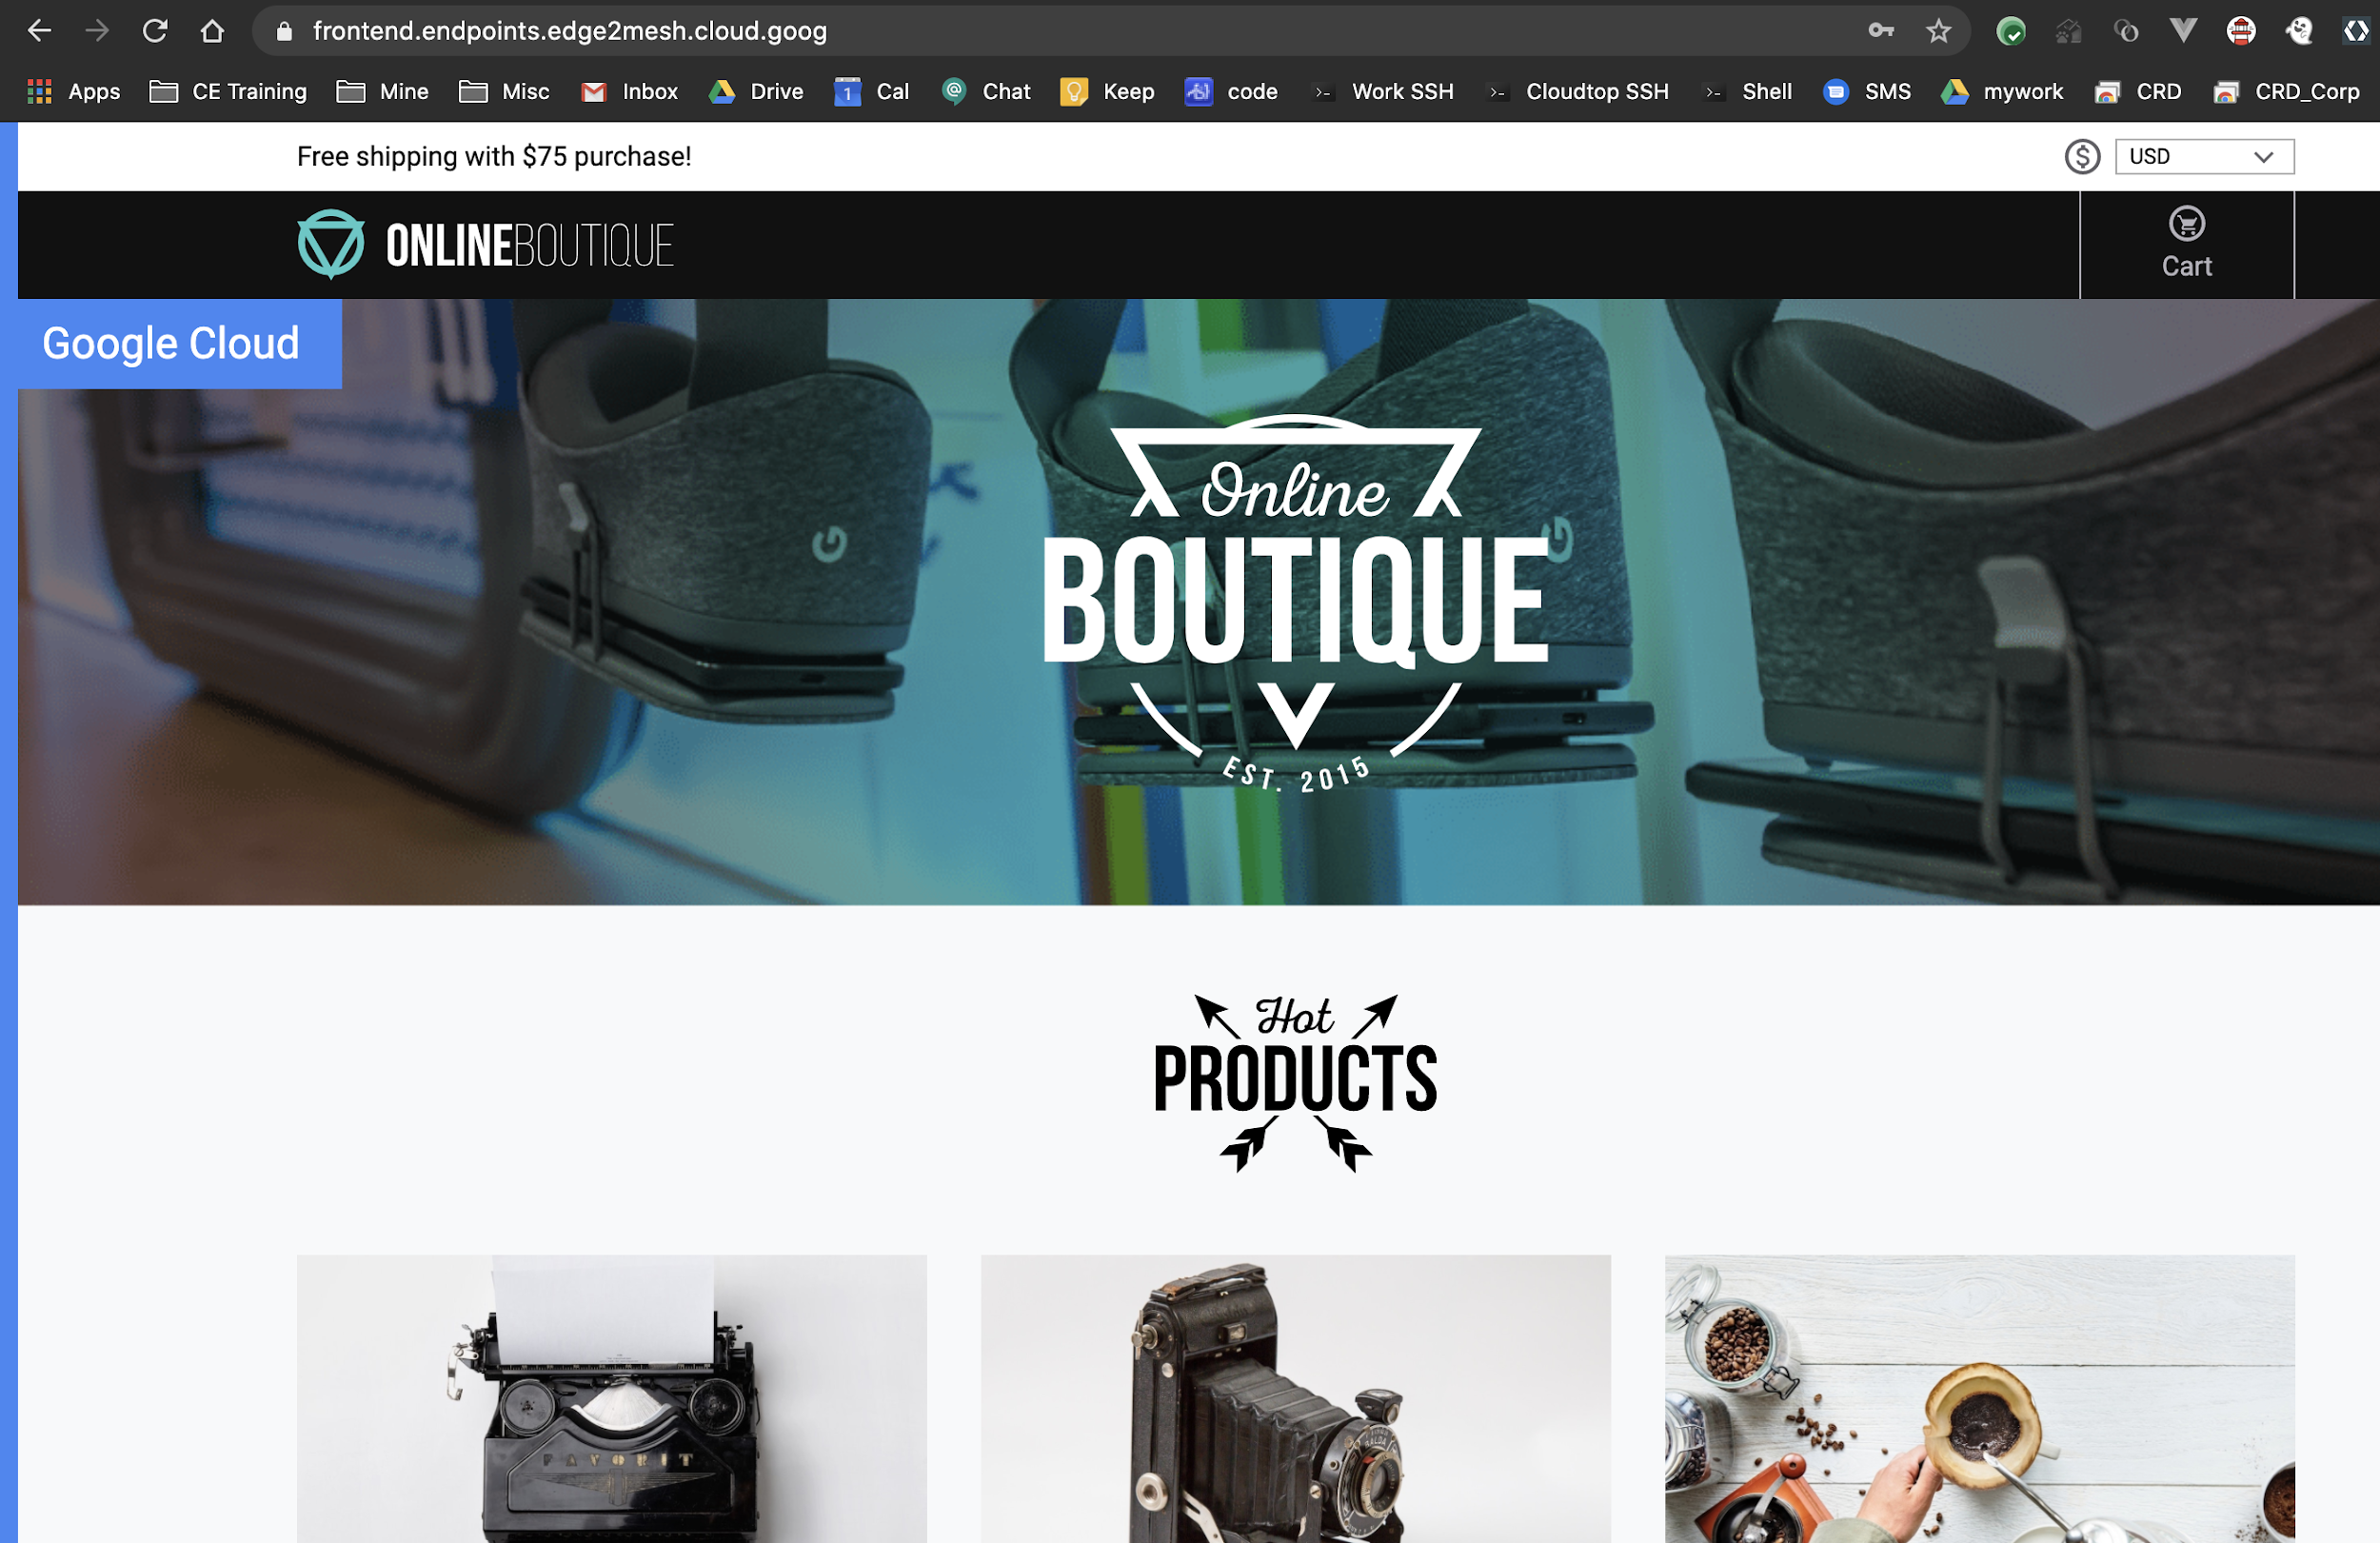 Prodotti mostrati nella home page di Boutique Online.